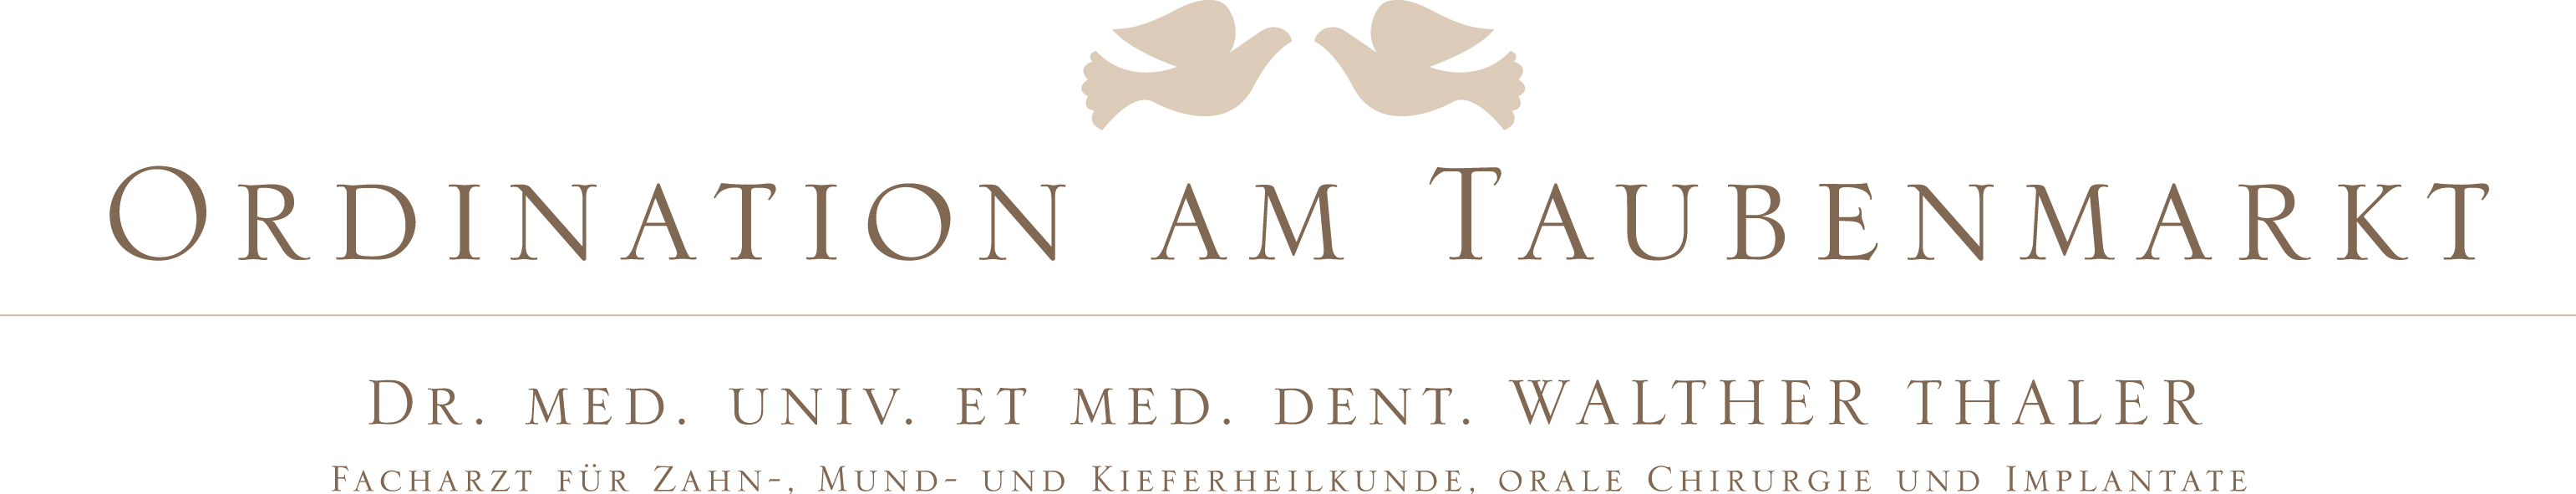 Dr. med. univ. et med. dent. Walther Thaler - Logo